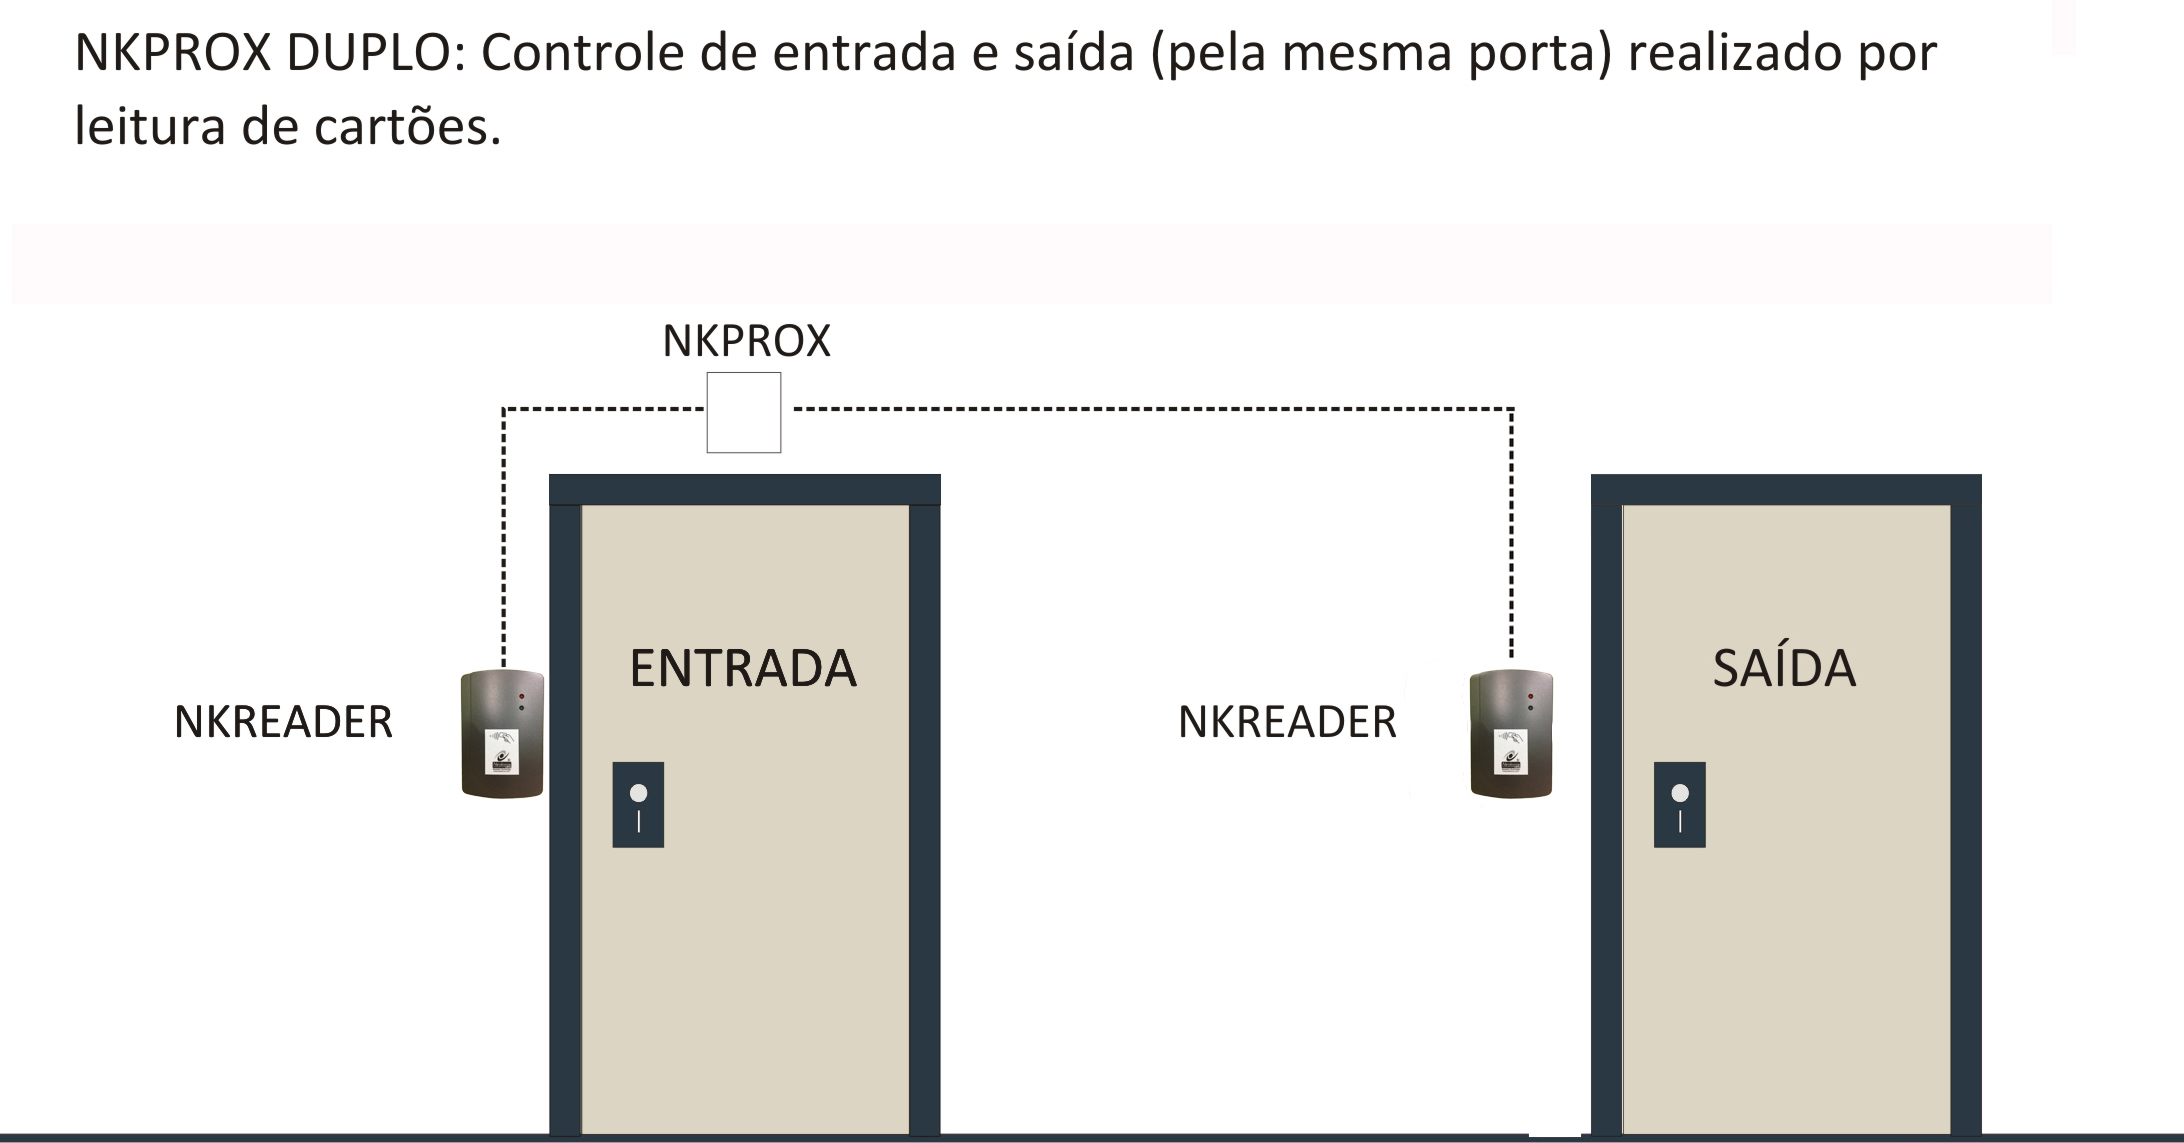 Fig. 4: A versão dupla do NKPROX, permite o controle de entrada e saída através da leitura de cartões quando duas unidades NKREADER se encontram devidamente conectados: um no exterior e outro no